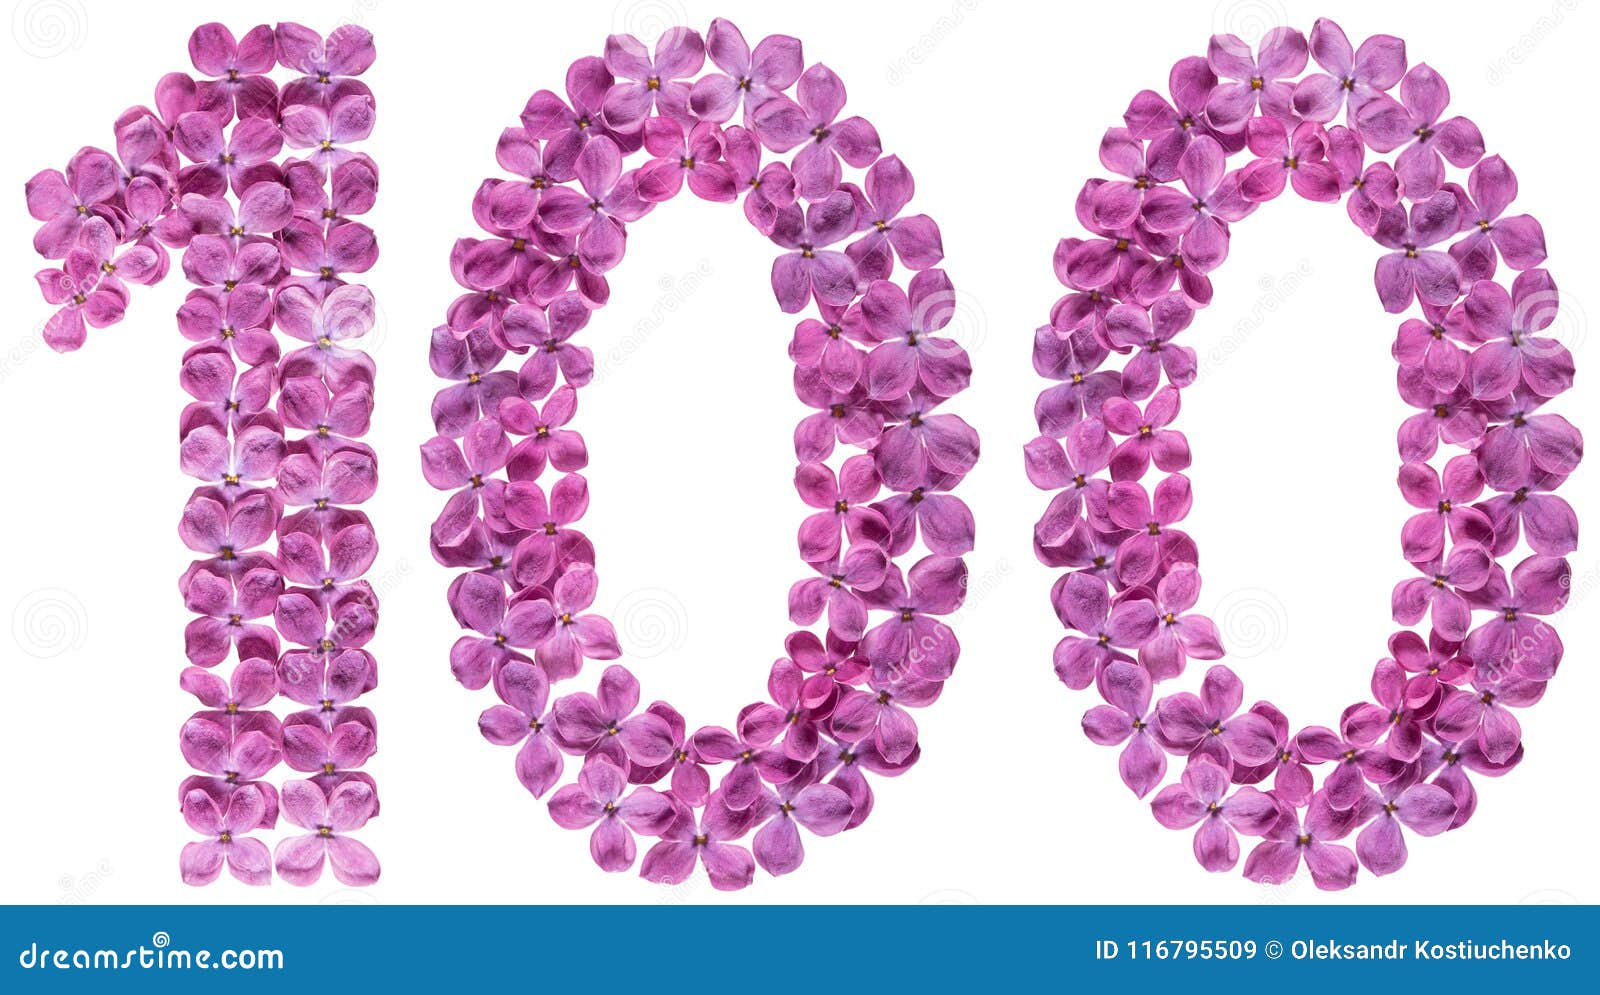 Αραβικός αριθμός 100, εκατό, από τα λουλούδια της πασχαλιάς, που απομονώνονται στο άσπρο υπόβαθρο